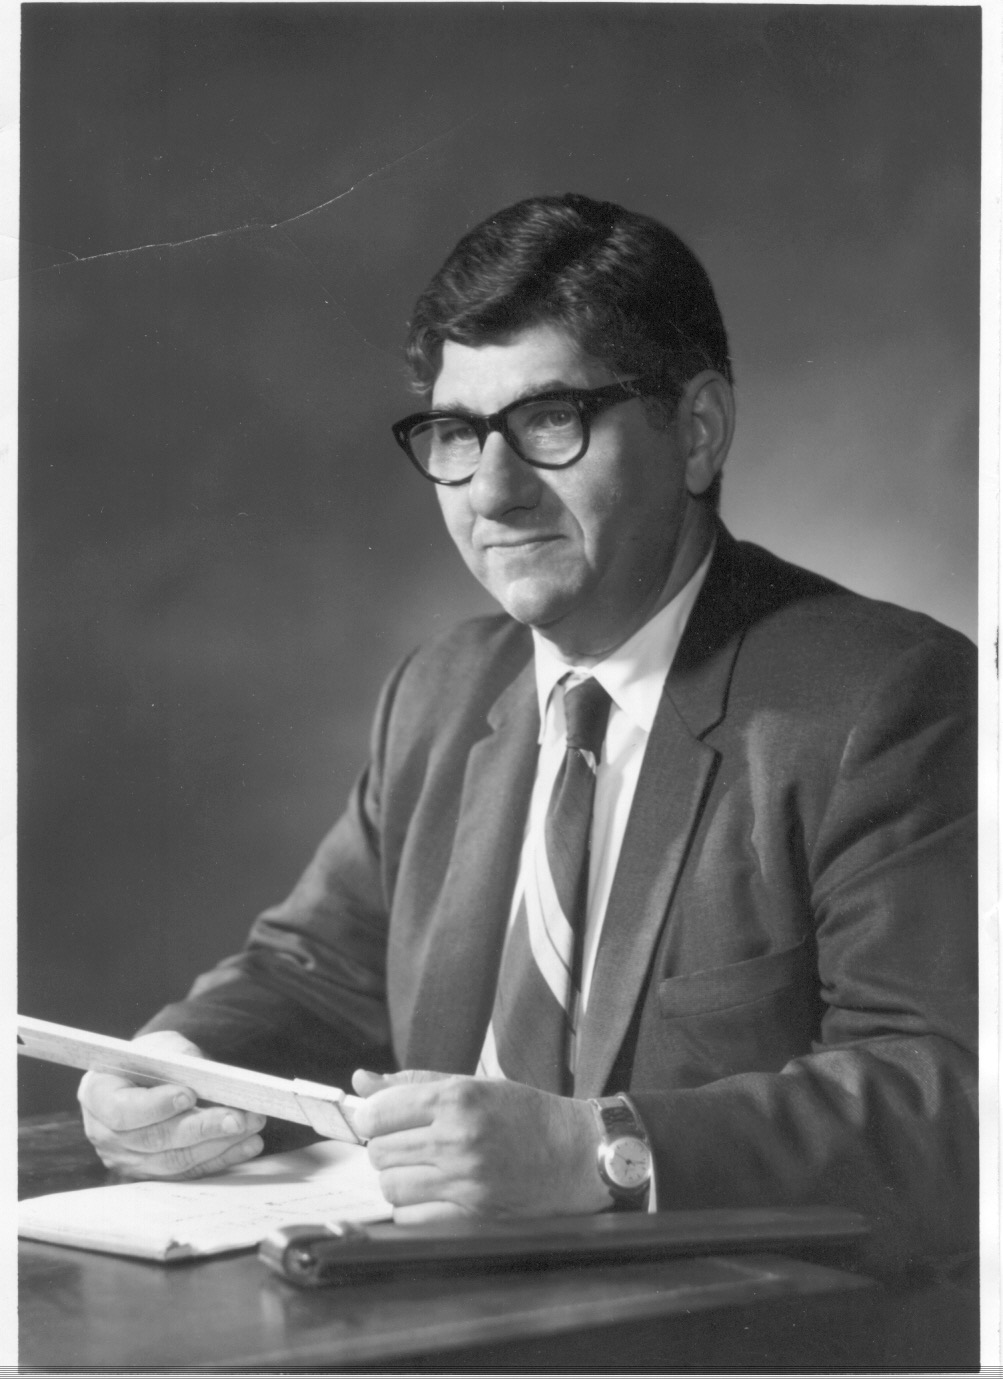 Donald W. Levenson